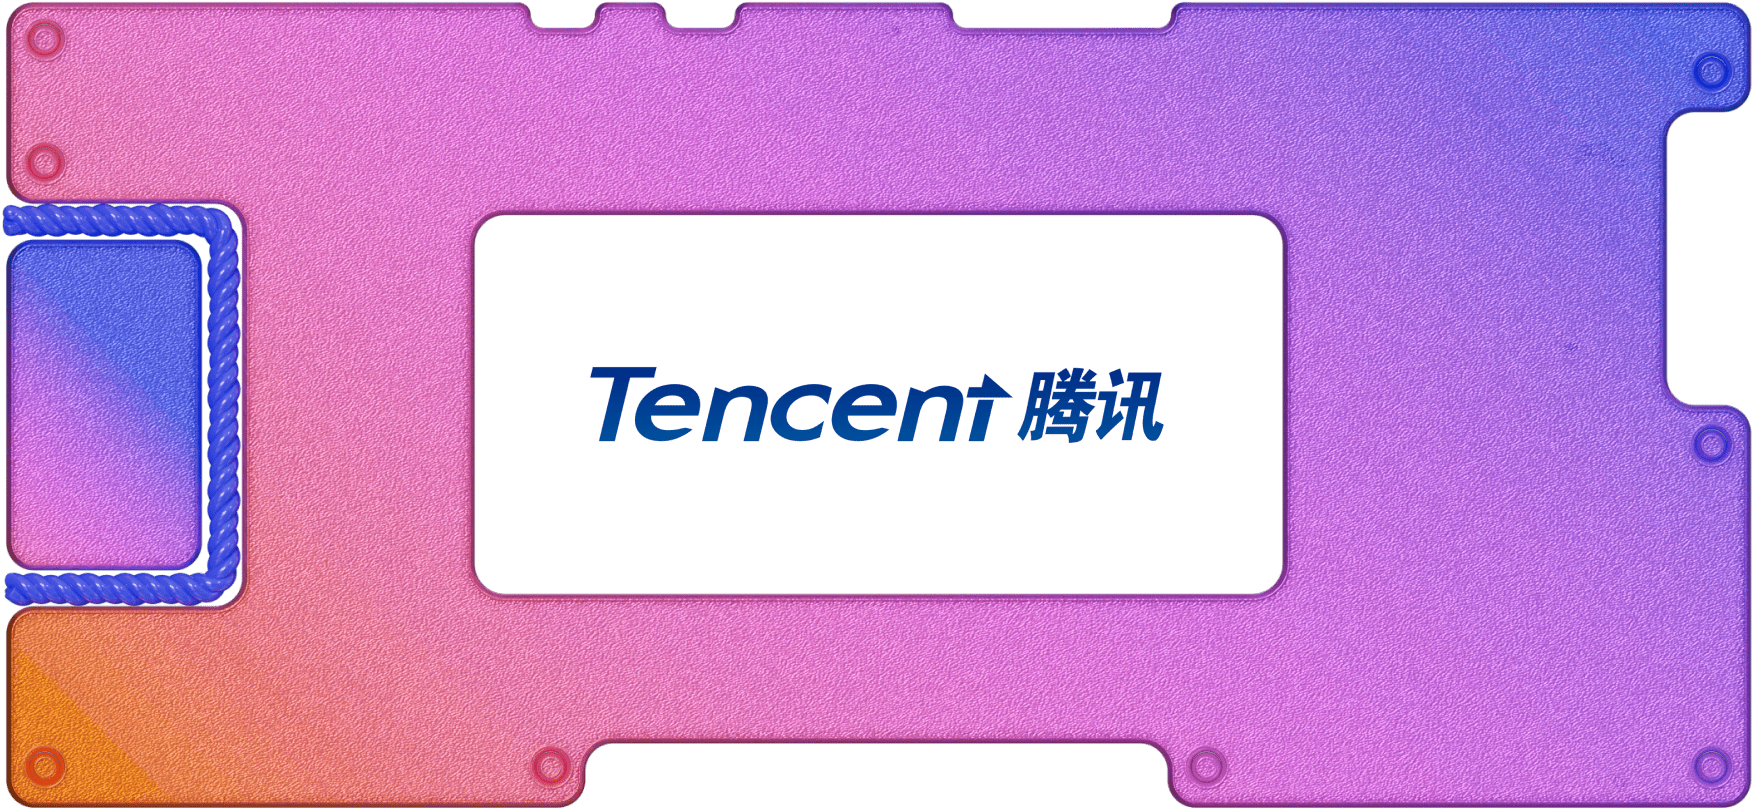 WeChat и антиутопия: инвестируем в Tencent